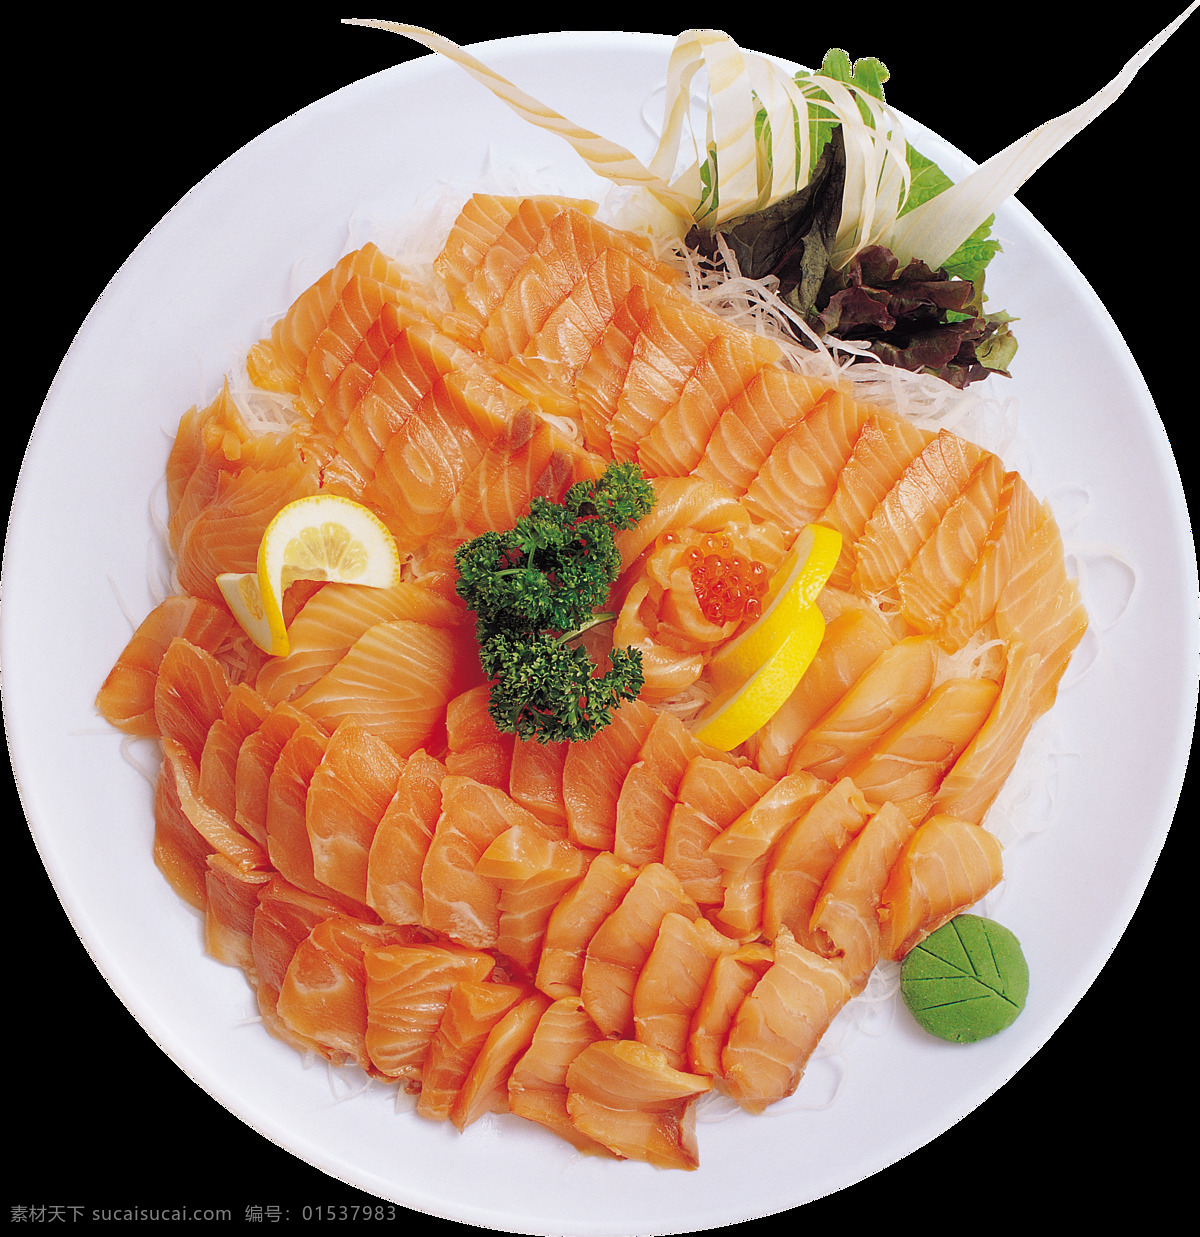 清新 简约 三文鱼 料理 美食 产品 实物 白色盘子 产品实物 刺身 料理美食 日式美食